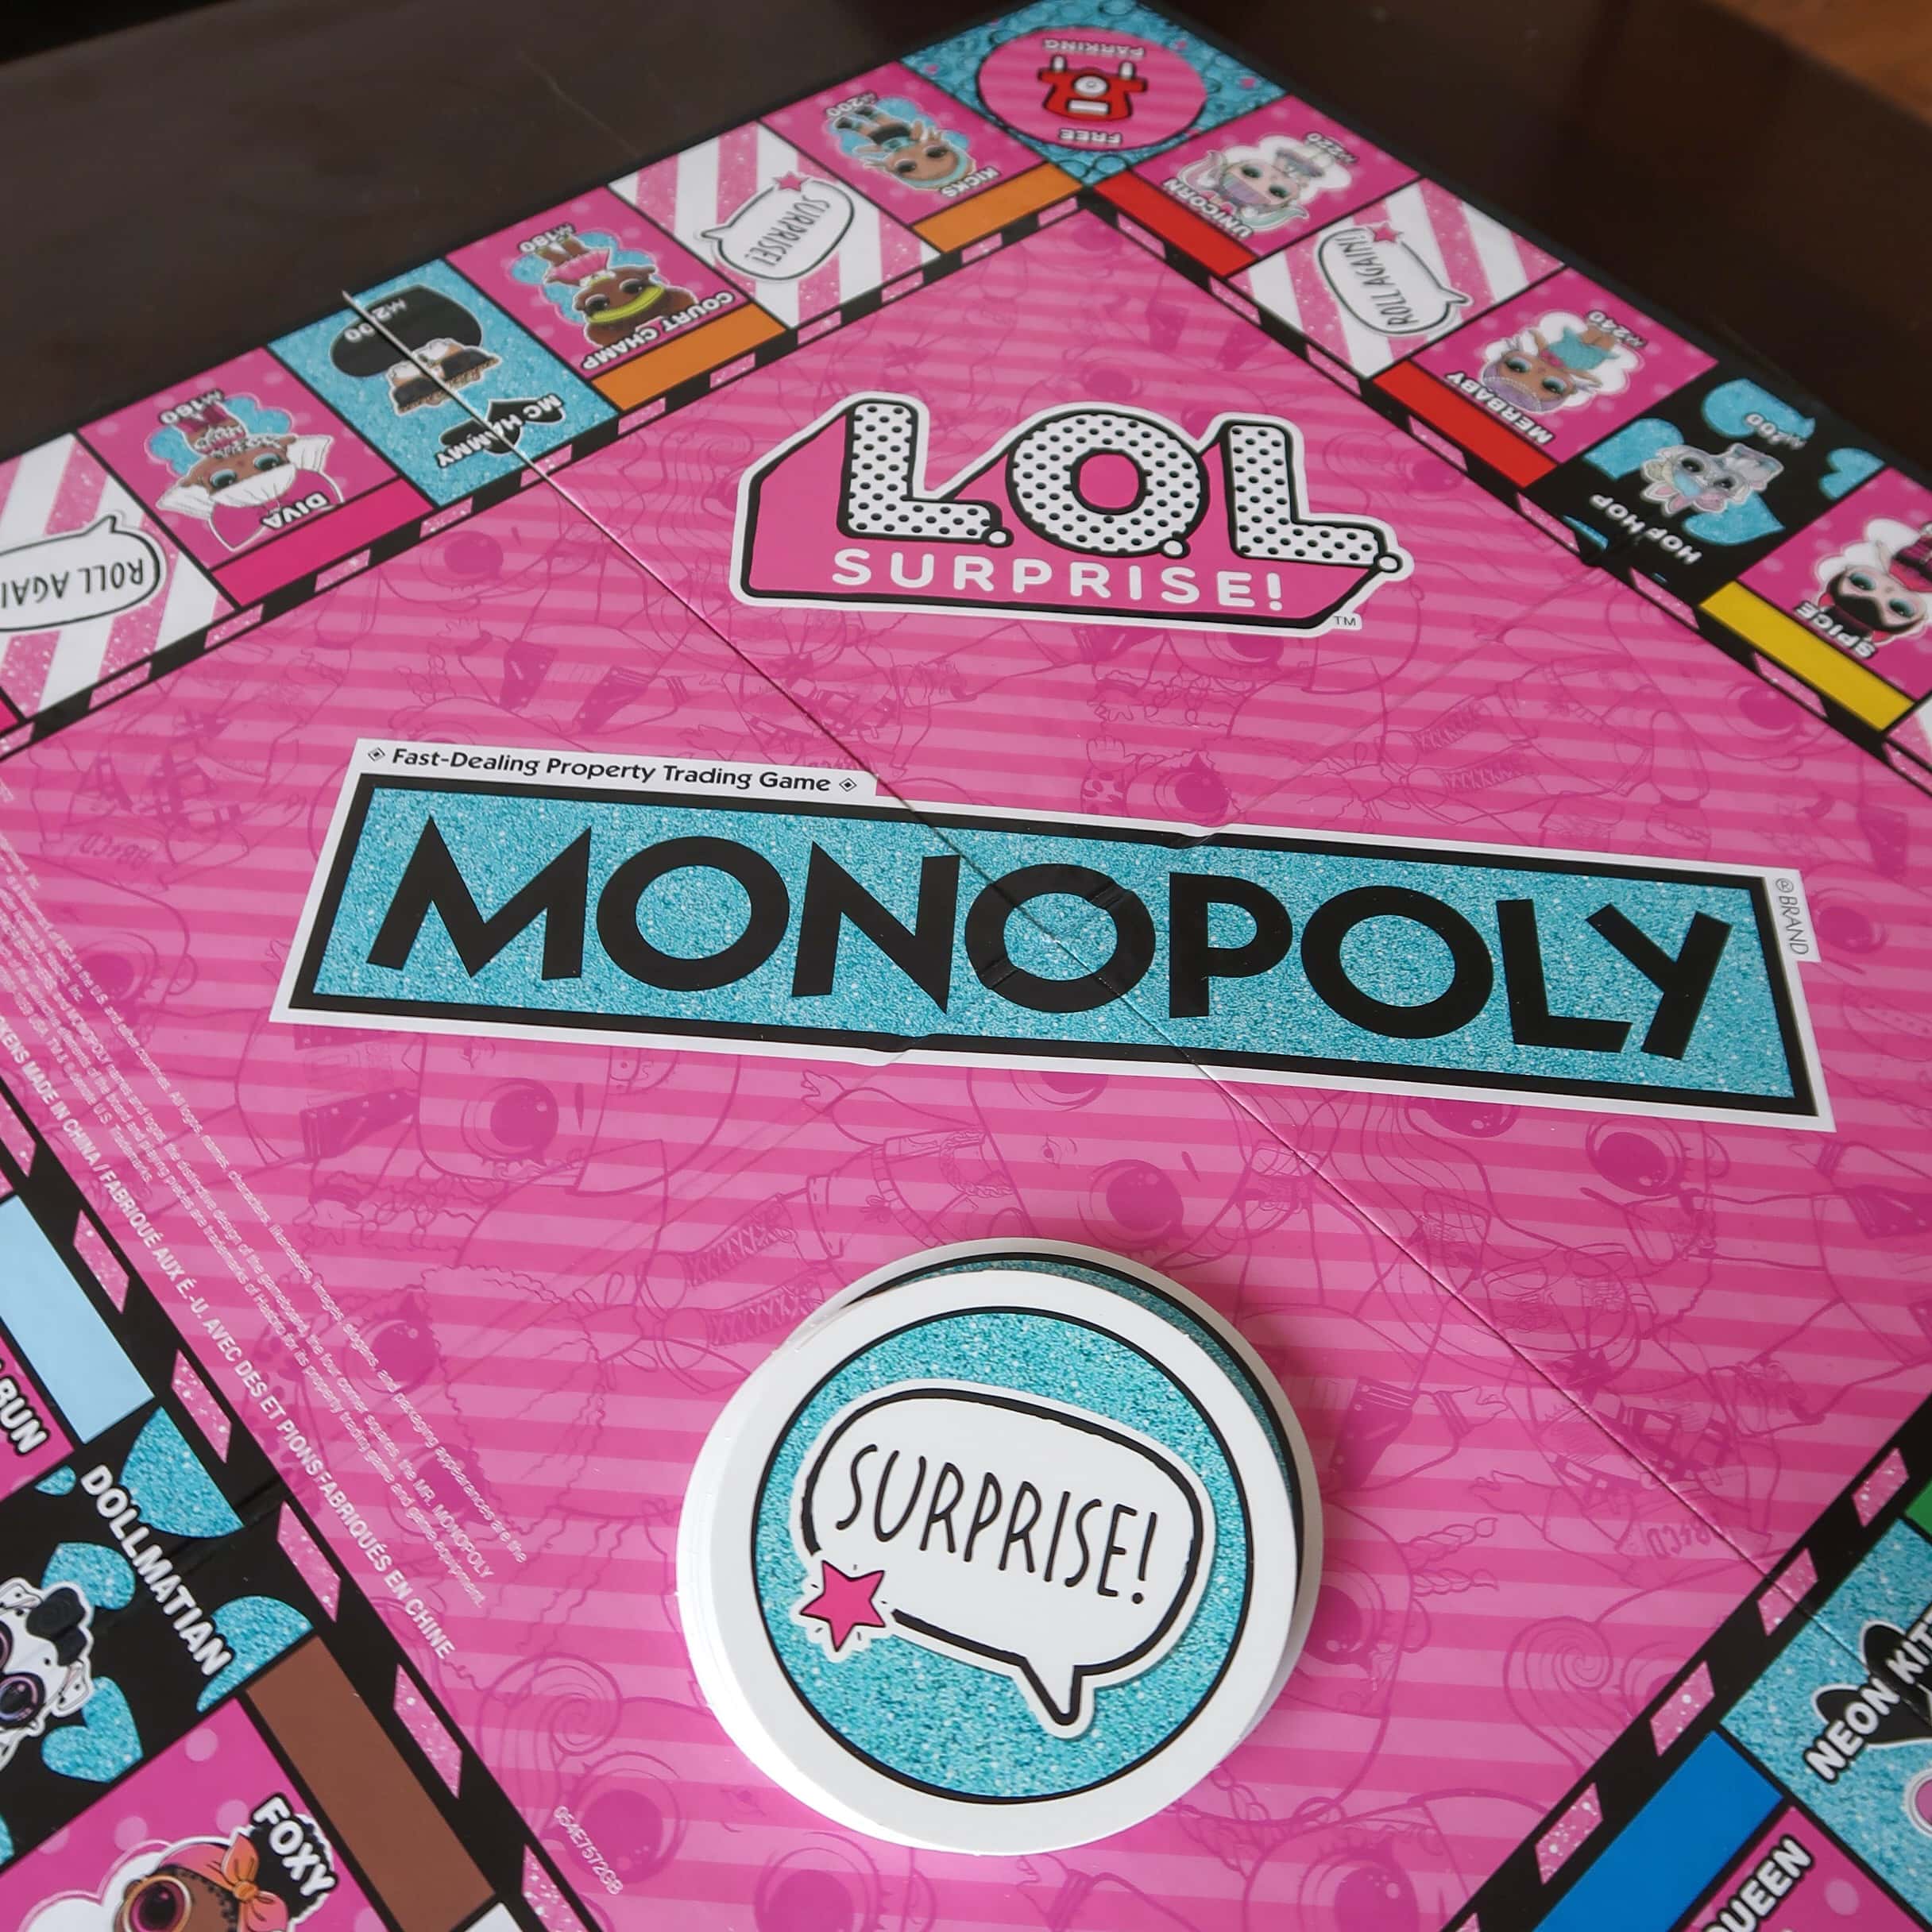 Monopoly: LOL Surprise Edition